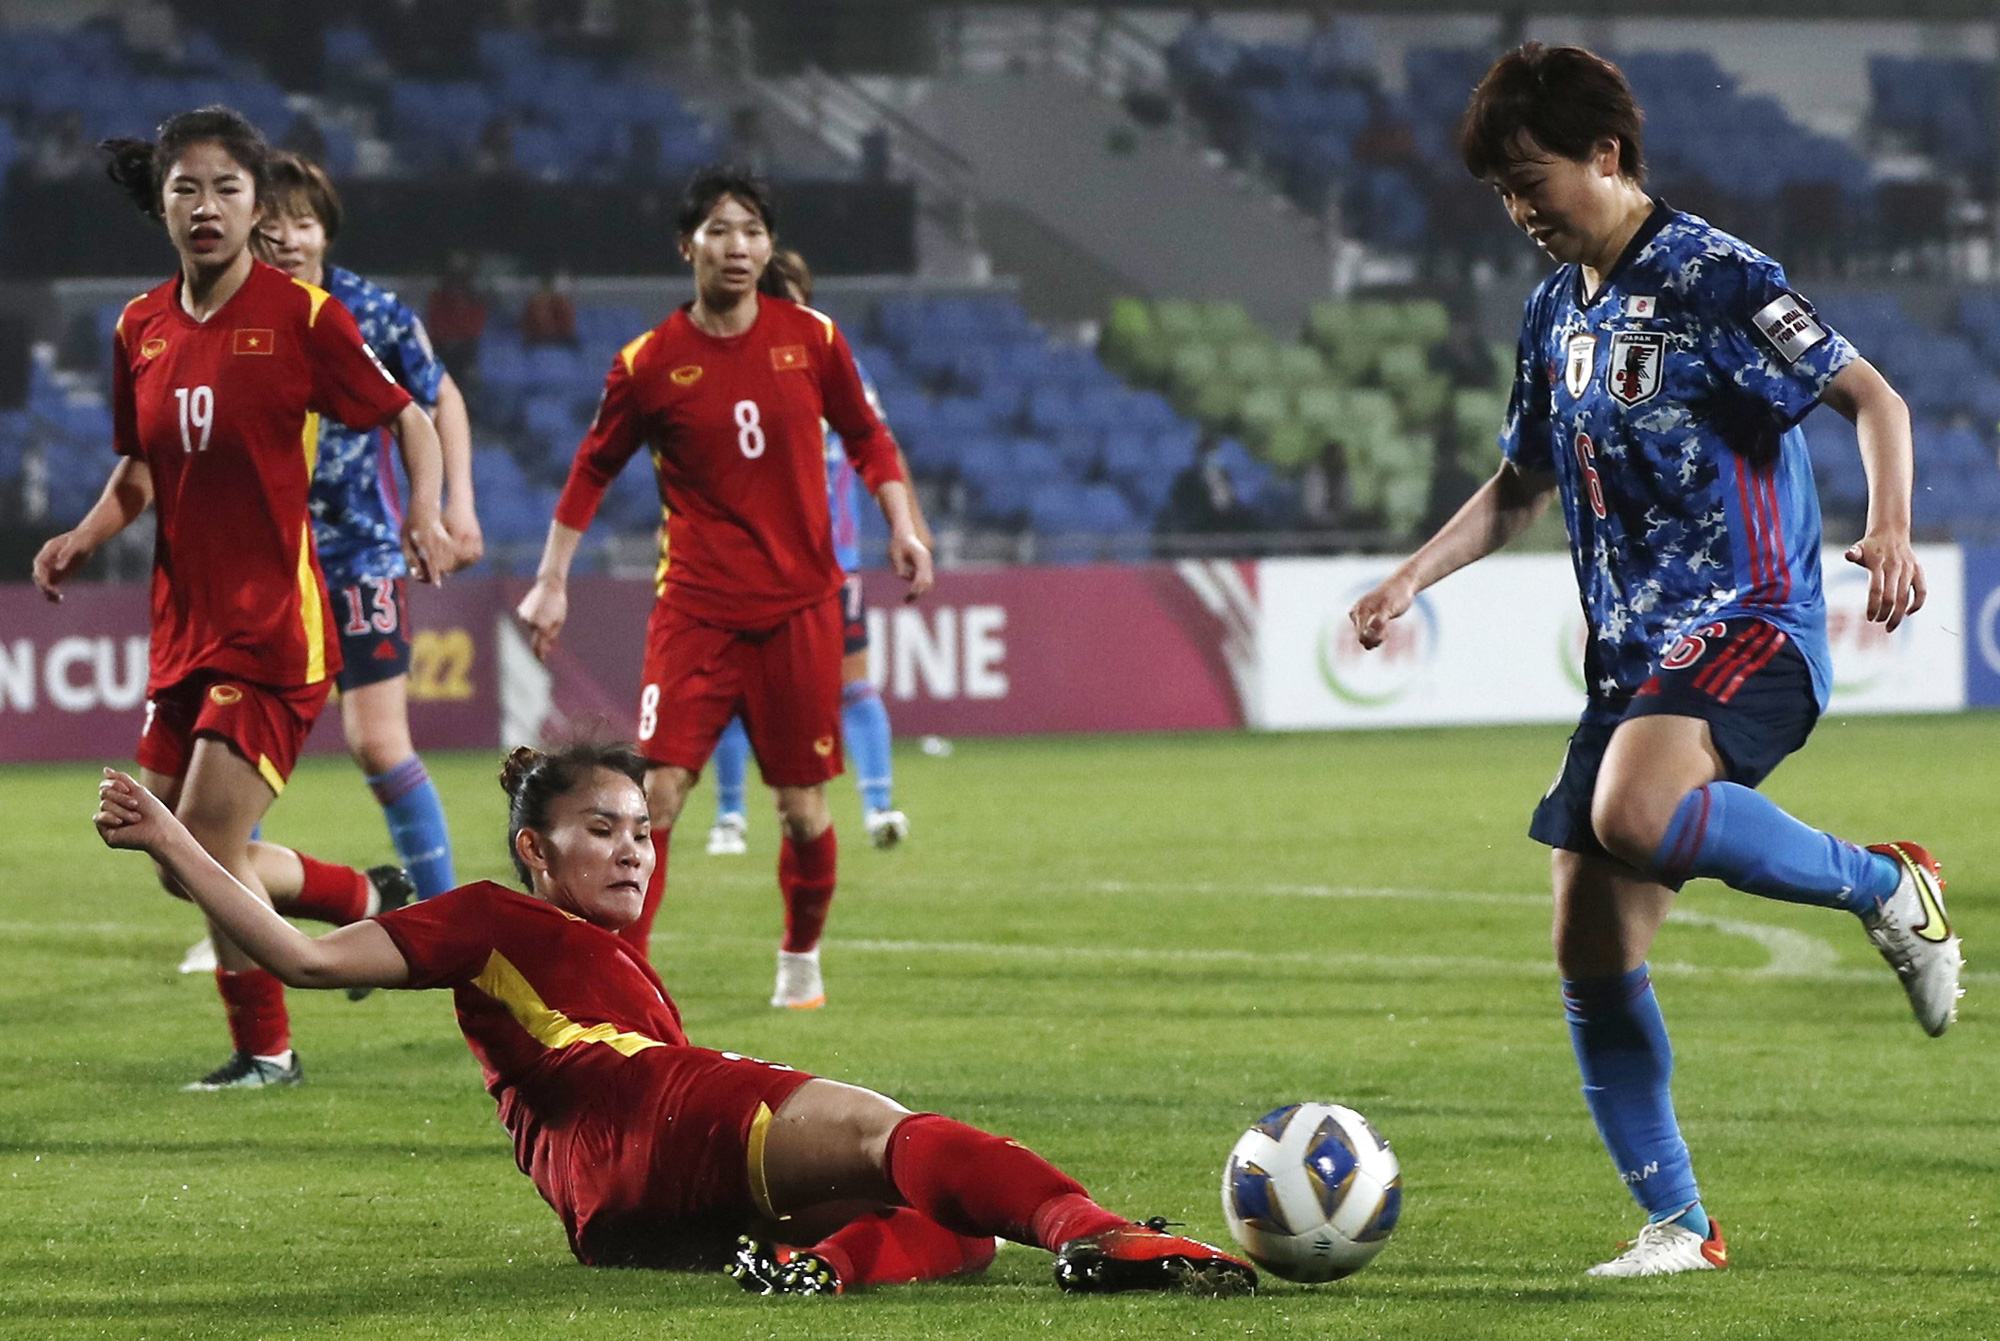 2 trận ghi 16 bàn, tuyển nữ Nhật Bản gửi chiến thư tới tuyển nữ Việt Nam: ‘Để xem người Việt cầm cự được bao lâu’